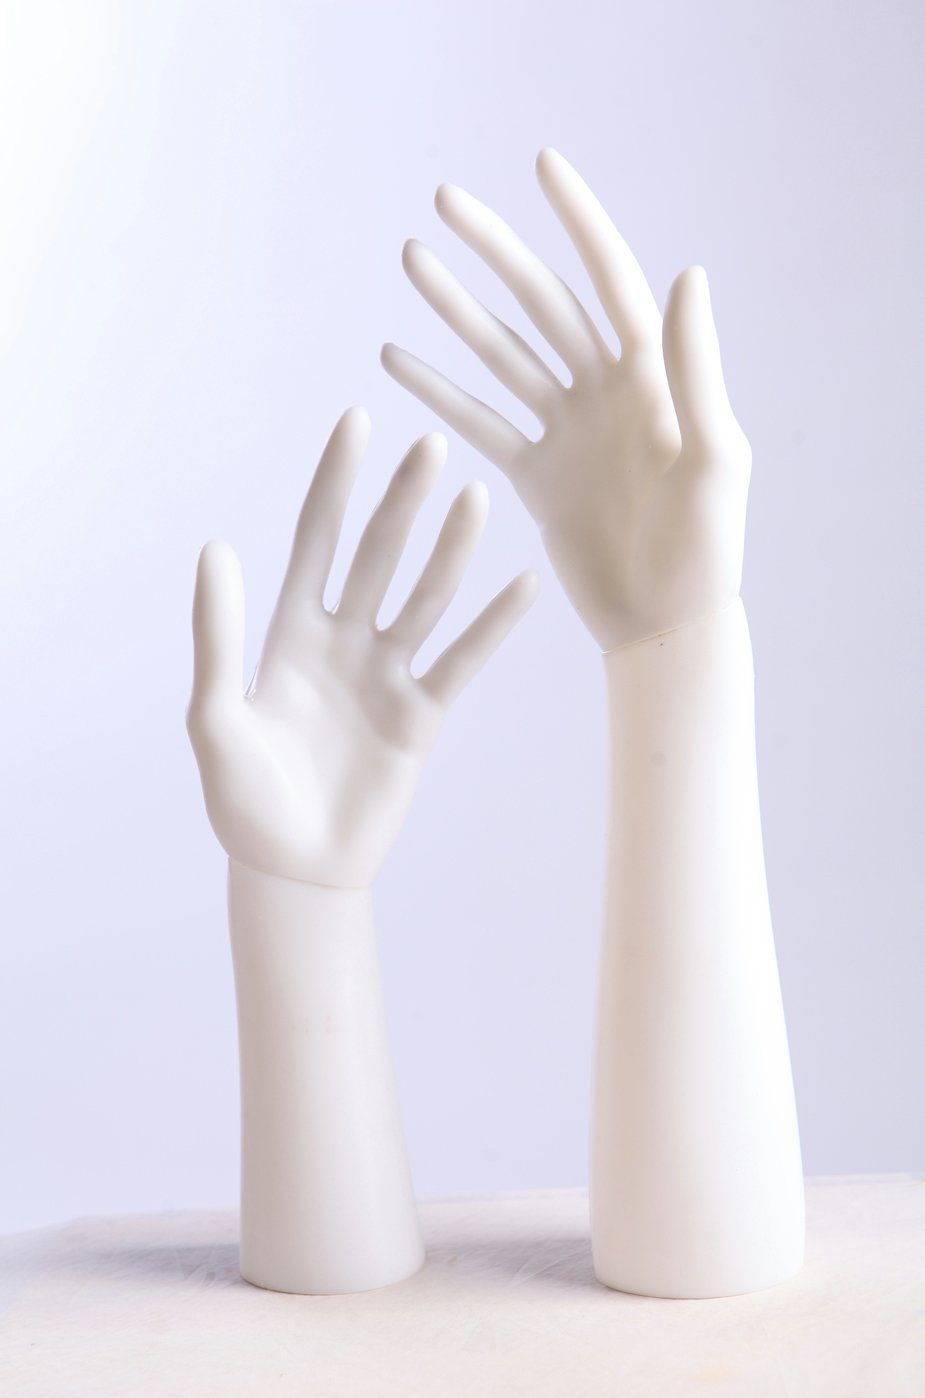 Eurotondisplay Schneiderpuppe Dekohände weiß oder beige lackiert elegant schmuck, Schicke Deko Hände, Ideal um schmuck zu präsentieren | Schneiderpuppen